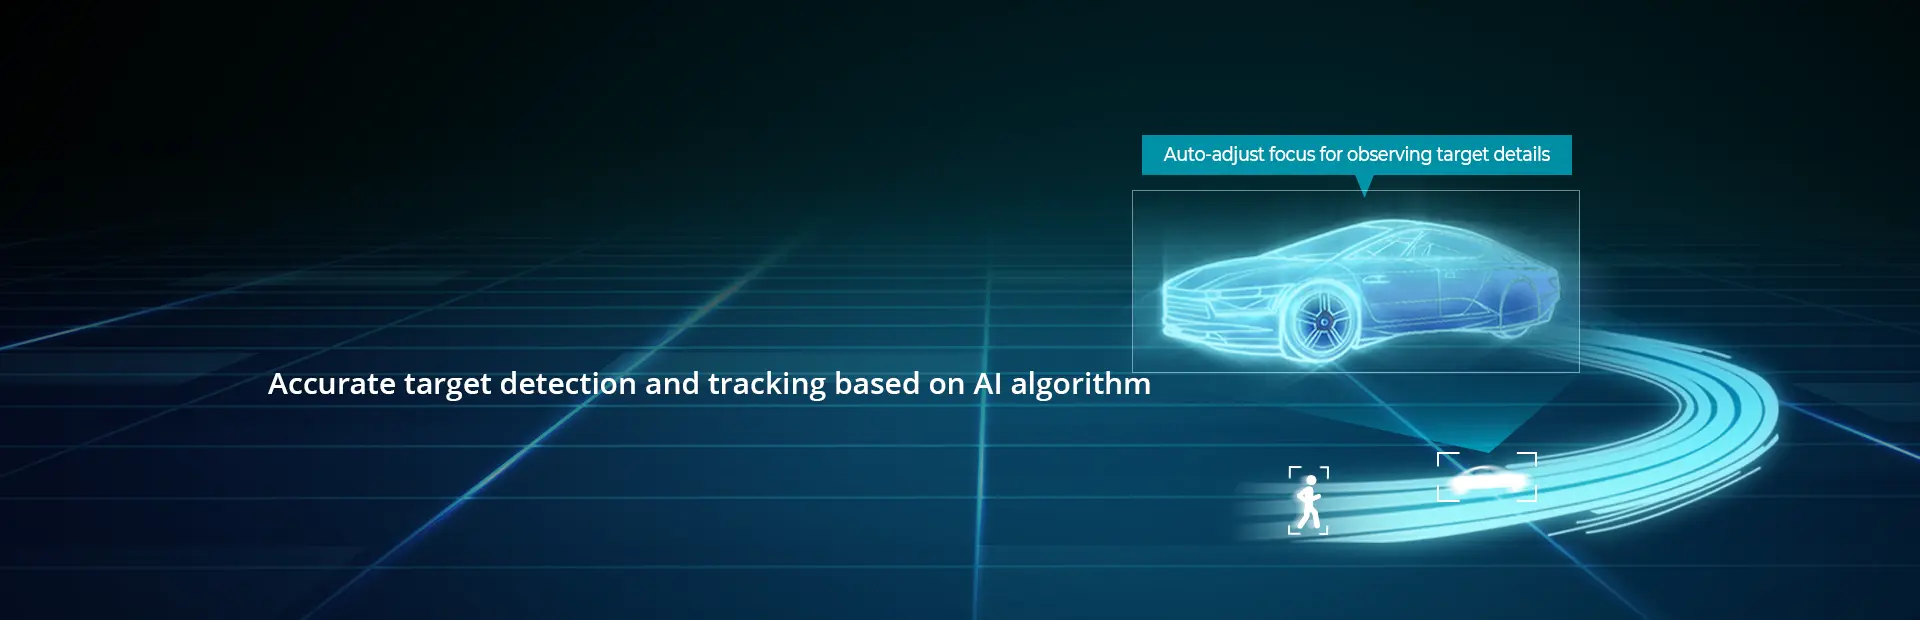 Rilevamento e tracciamento accurati degli oggetti basati su algoritmi di intelligenza artificiale